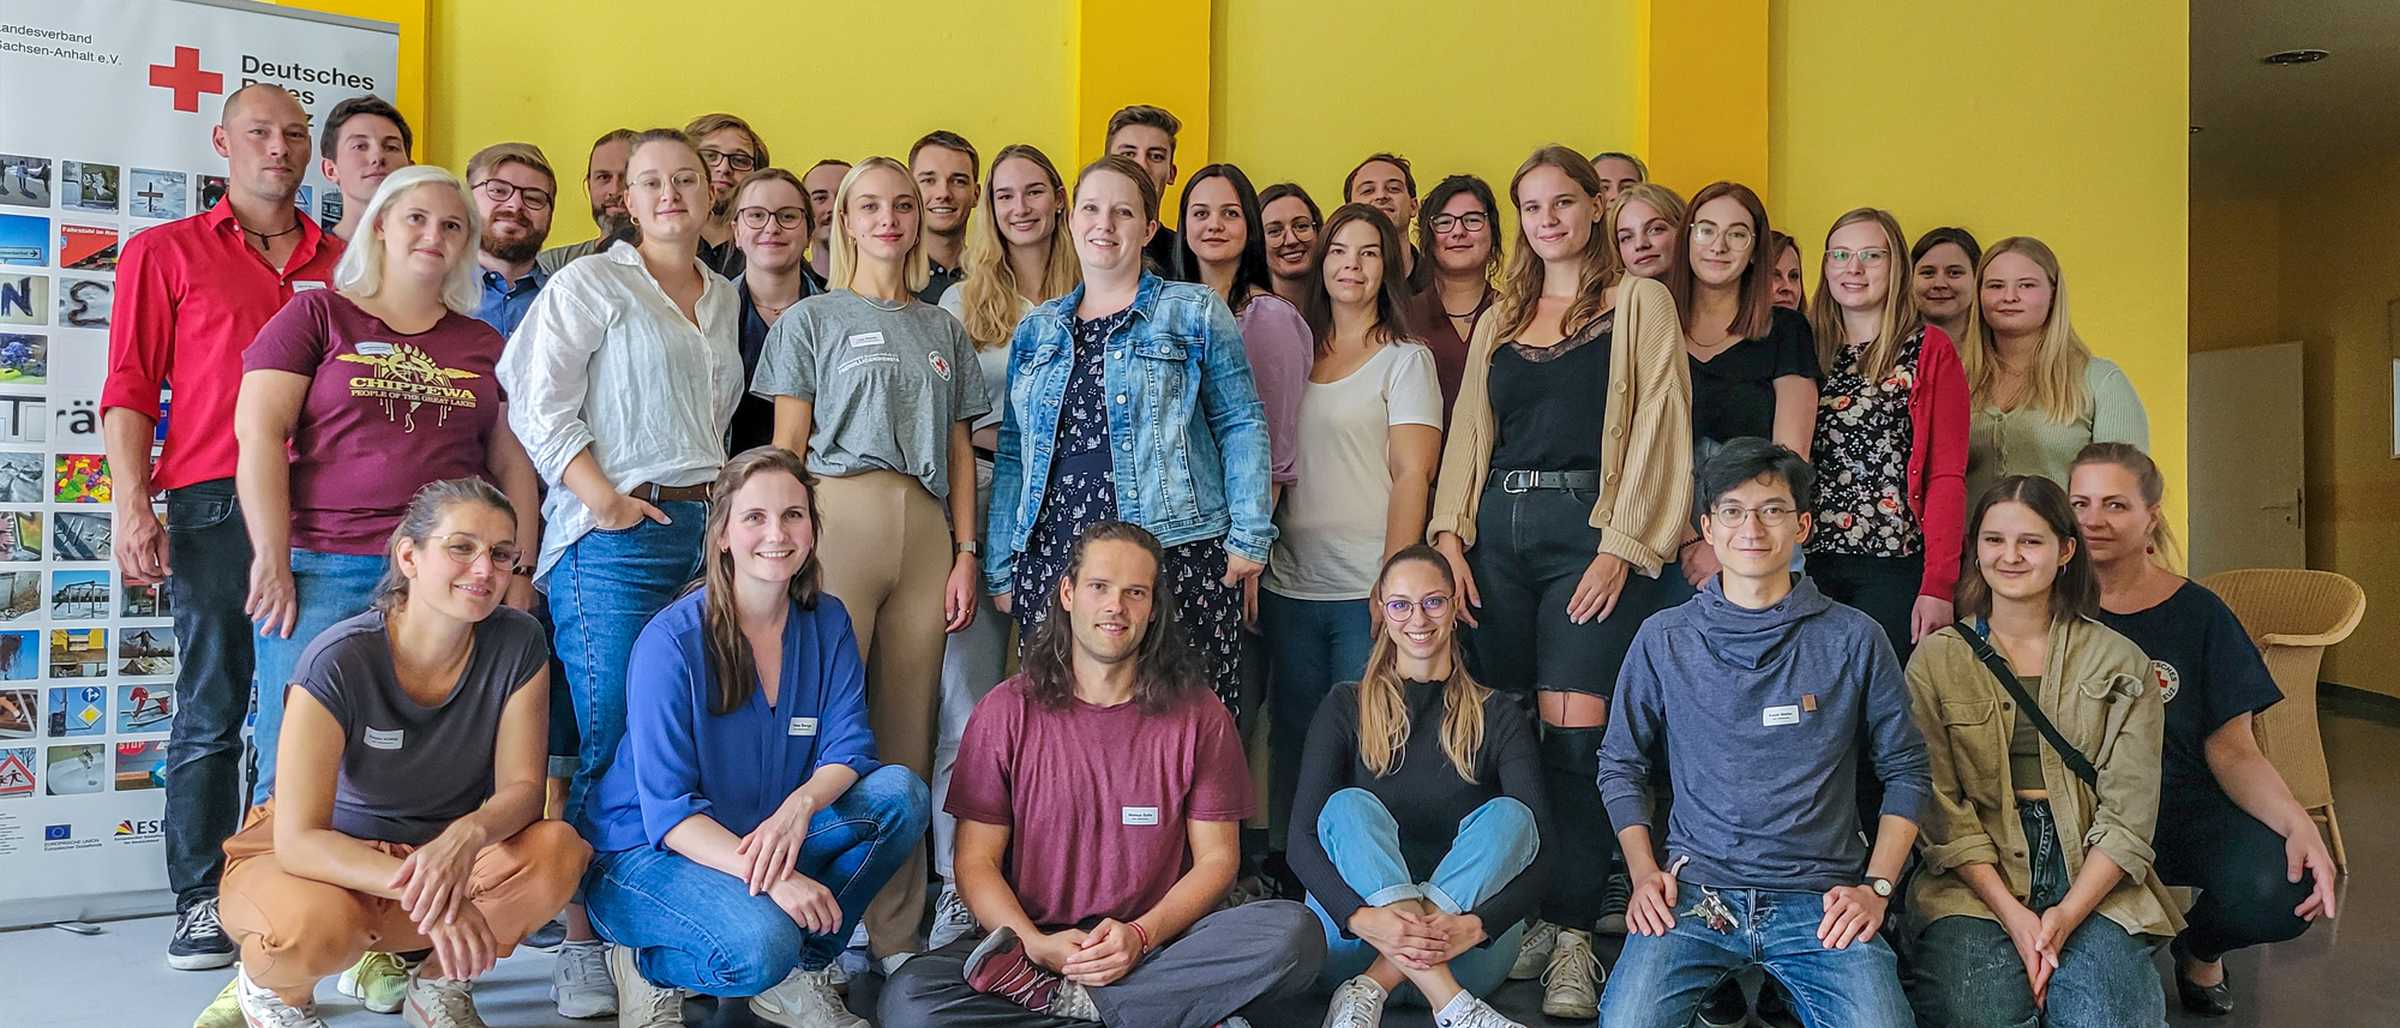 Die 22 angehenden Teamer:innen und die Mitarbeitenden des Betriebsteils Freiwilligendienste stehen und knien für ein Gruppenfoto vor einer gelben Wand in unserer Seminarakademie